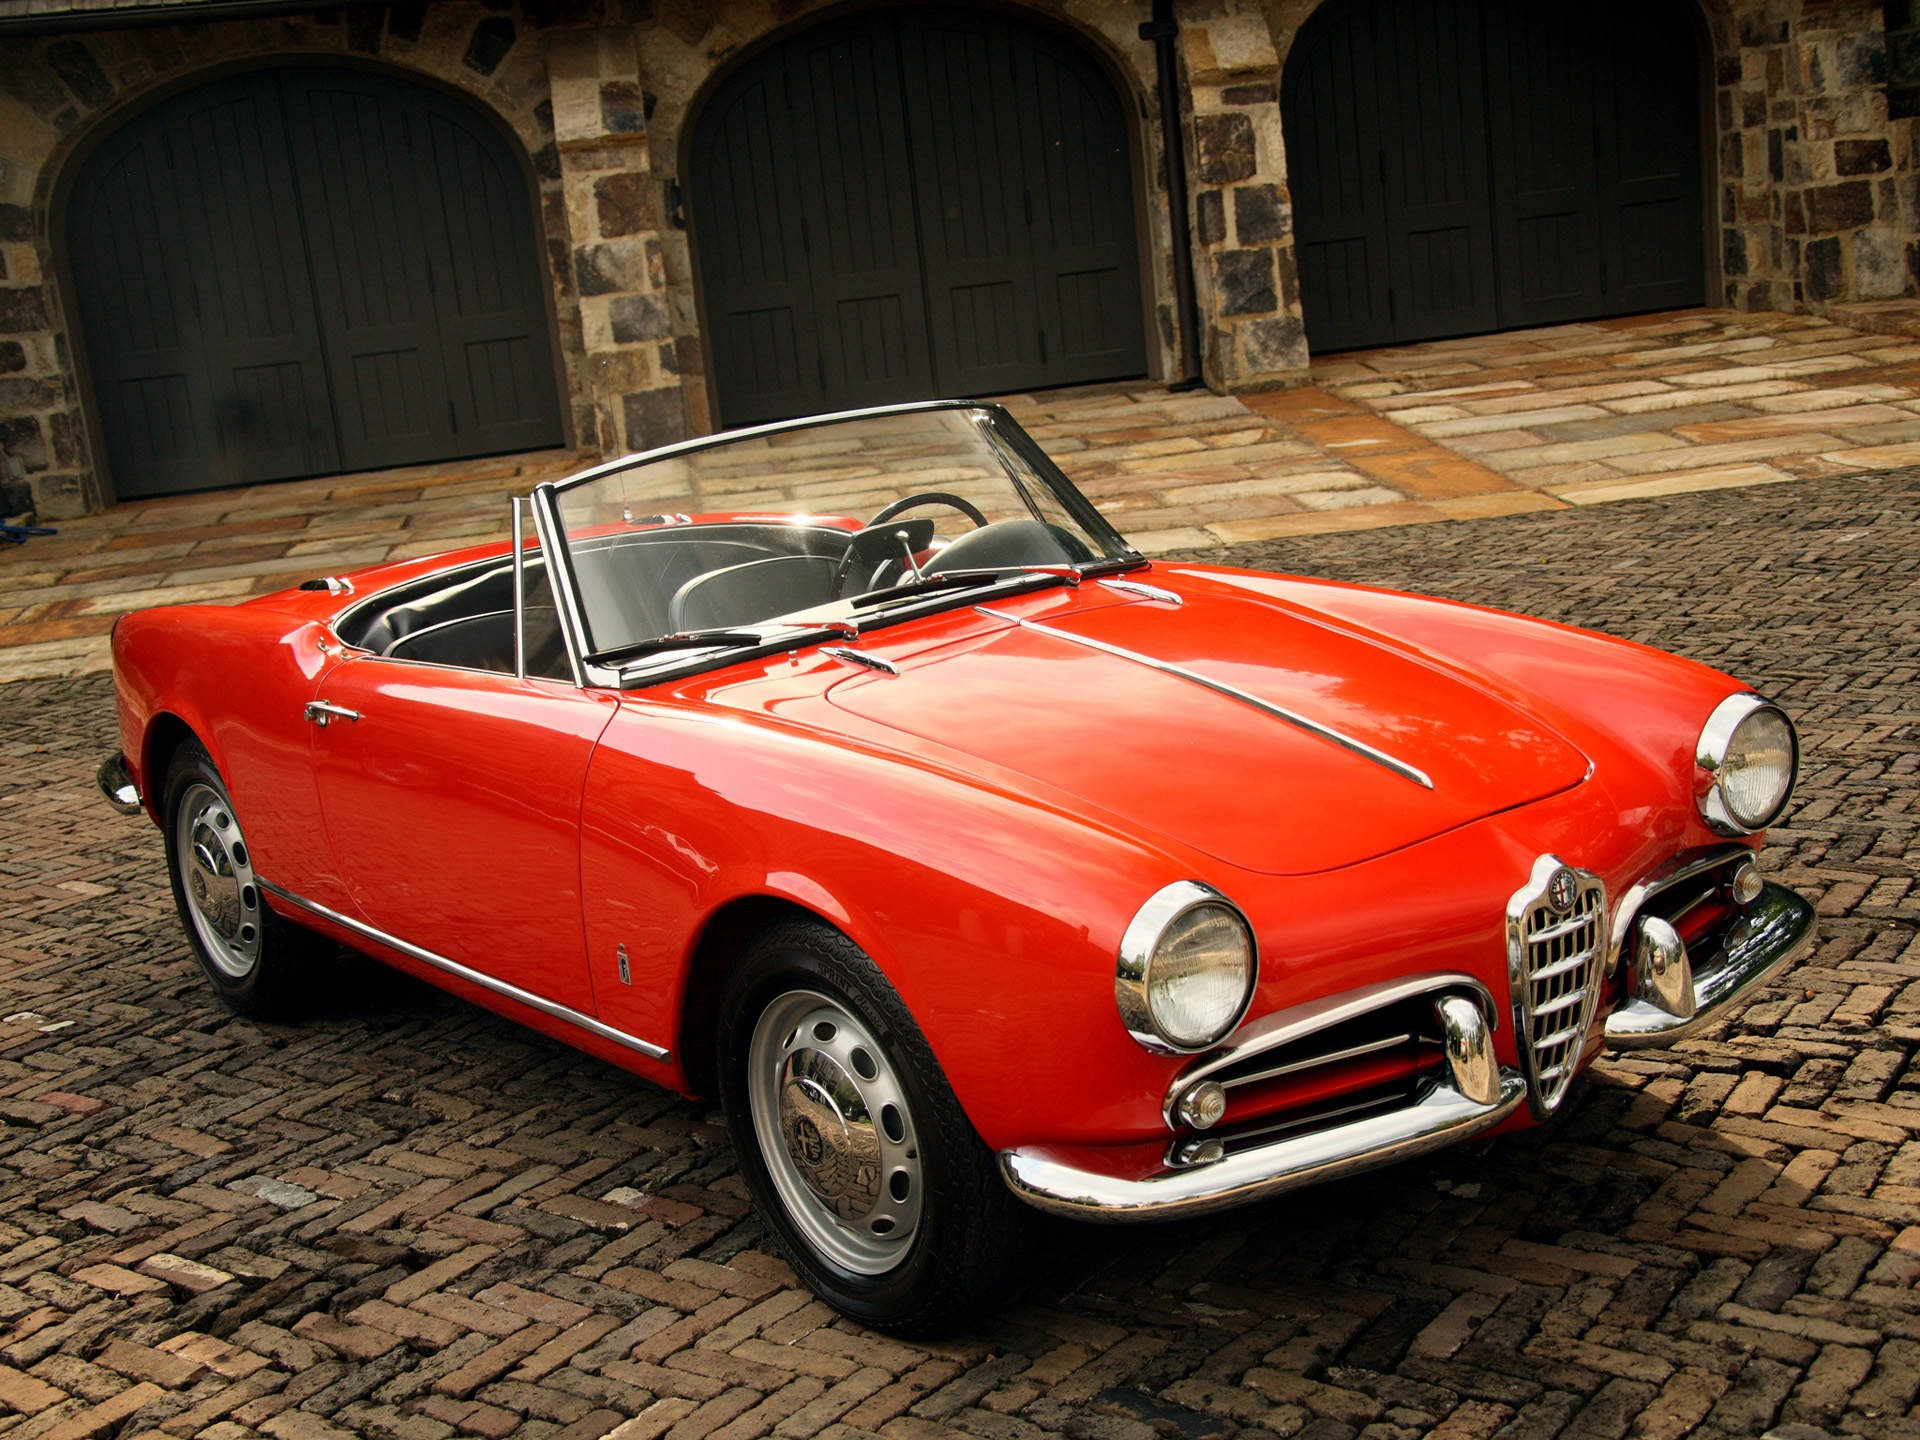 Télécharger des fonds d'écran Alfa Romeo Giulietta Spider HD